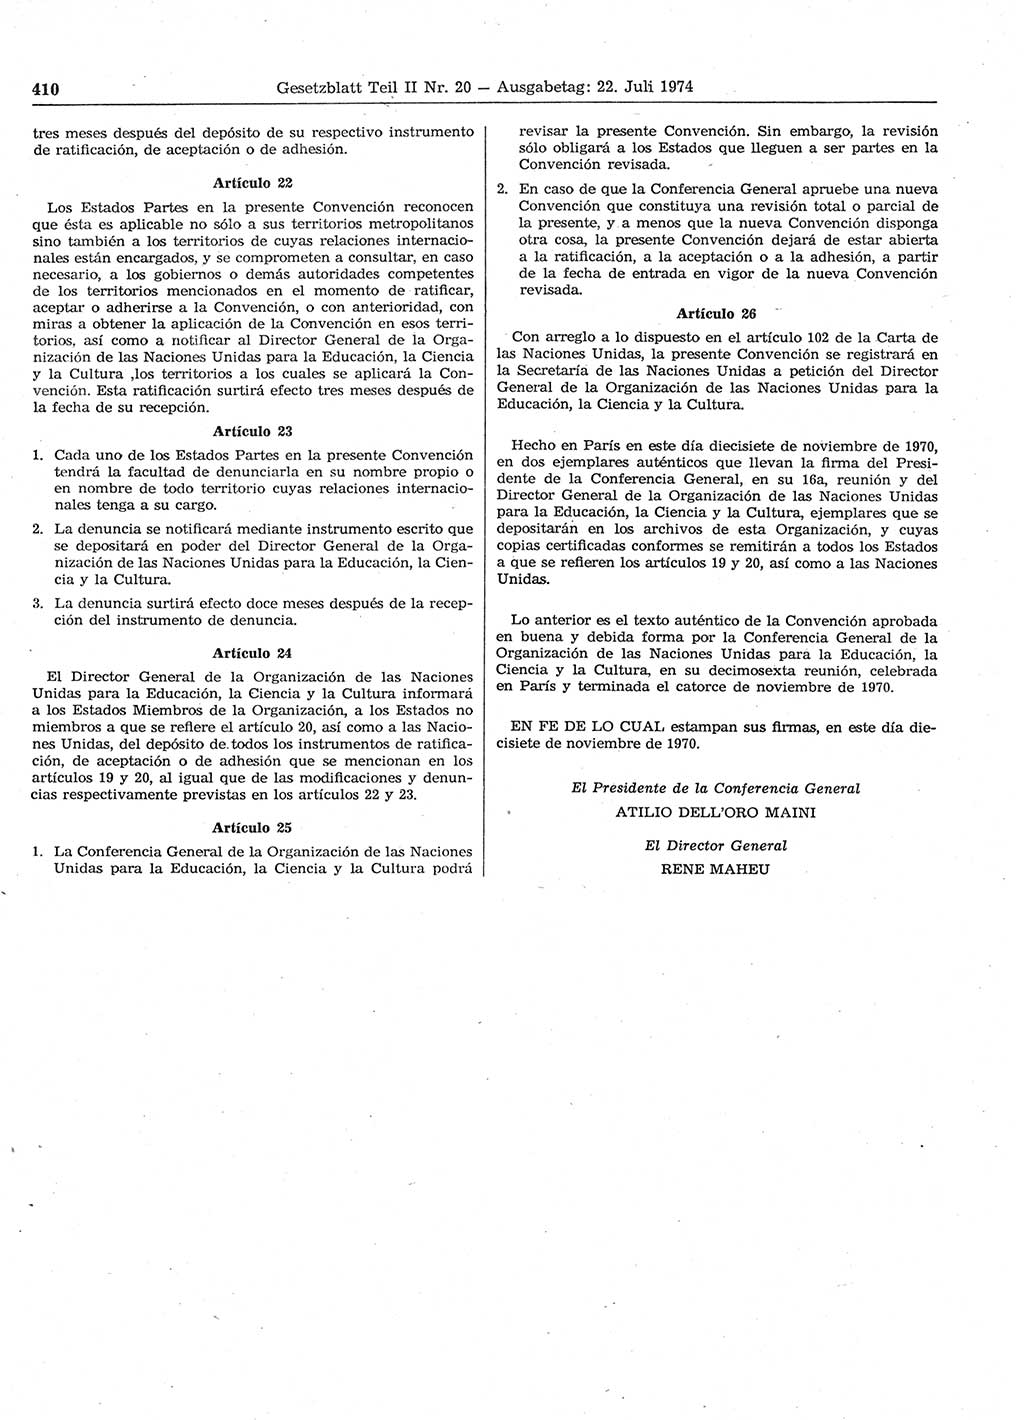 Gesetzblatt (GBl.) der Deutschen Demokratischen Republik (DDR) Teil ⅠⅠ 1974, Seite 410 (GBl. DDR ⅠⅠ 1974, S. 410)